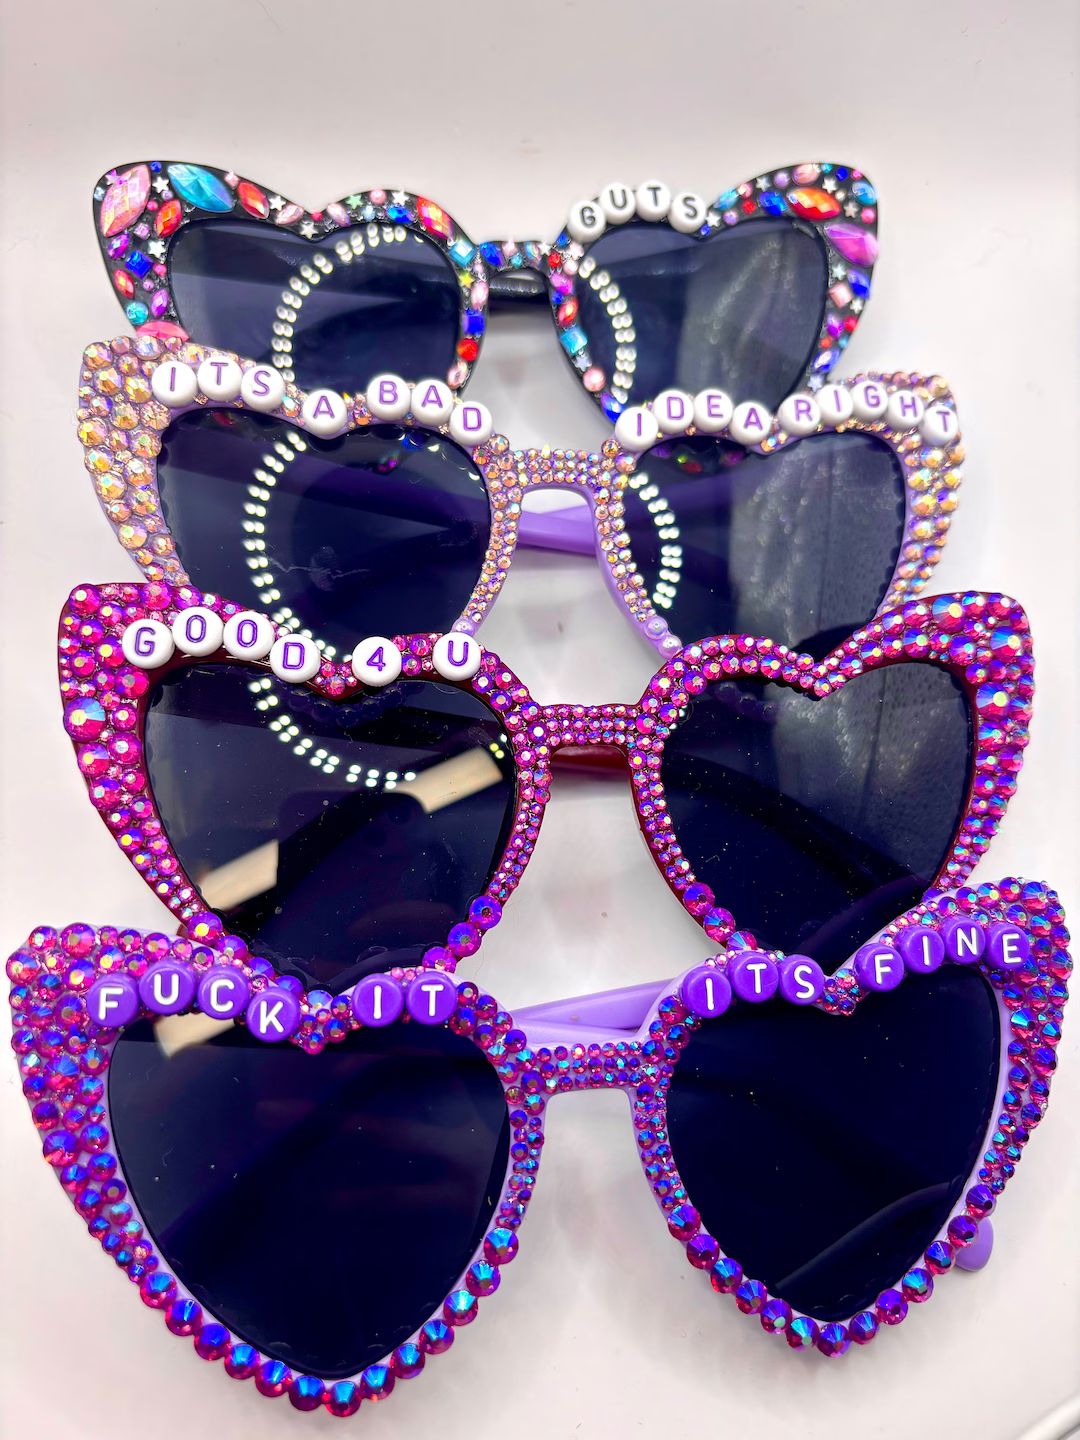 CUSTOMIZABLE GUTS World Tour Bedazzled Glasses / Olivia Rodrigo Glasses - Etsy | Etsy (US)